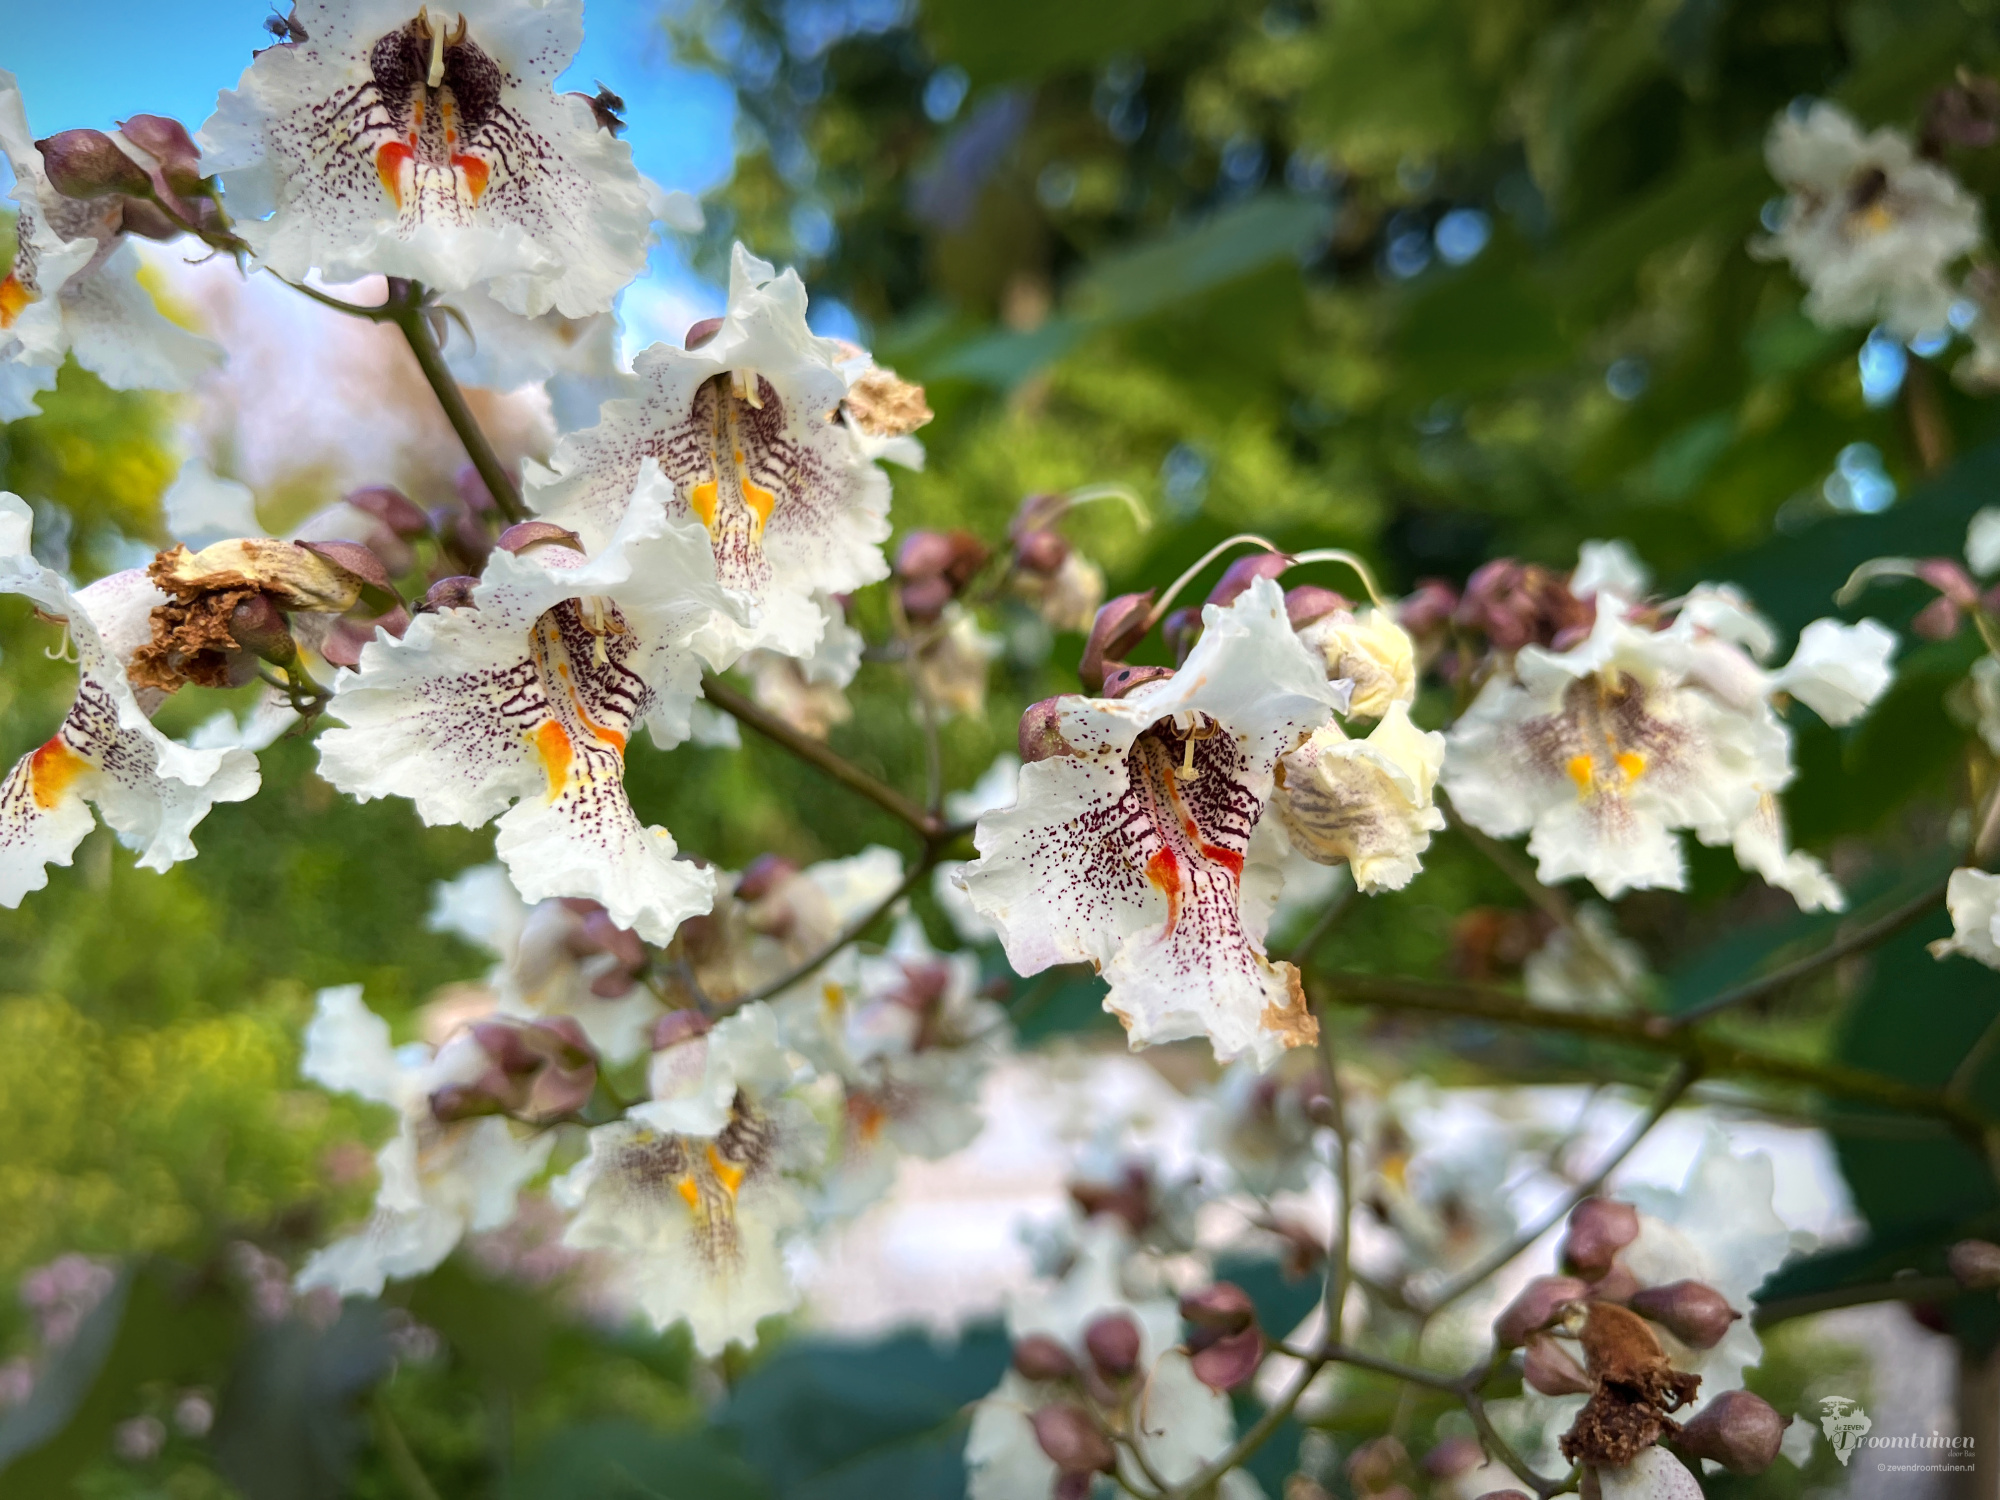 Wonderschone bloemen van de Trompetboom (Catalpa bignonioides). Een zelfgezaaide Catalpa groeit vrij snel. Deze boom bestond enkele jaren geleden nog niet eens.